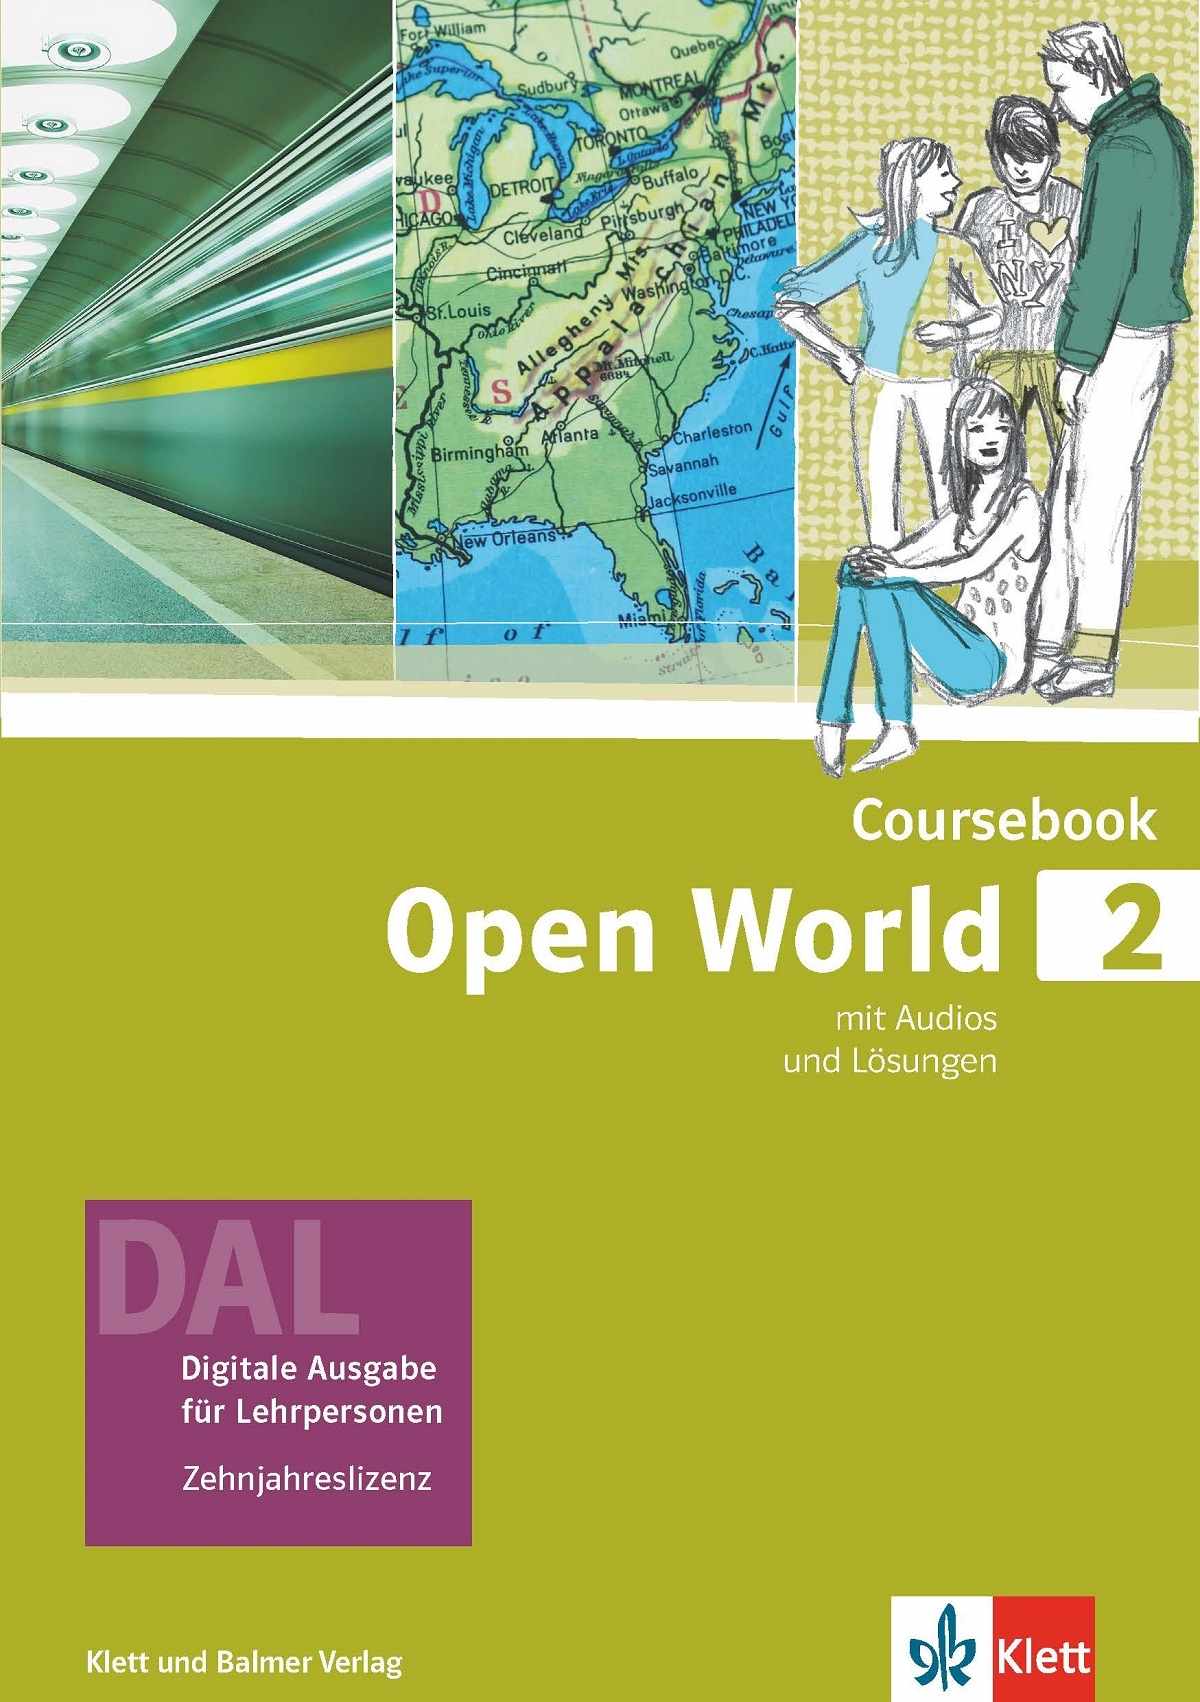 Open World 2, Coursebook DAL digitale Ausgabe für LP / SPEZIALBEST.